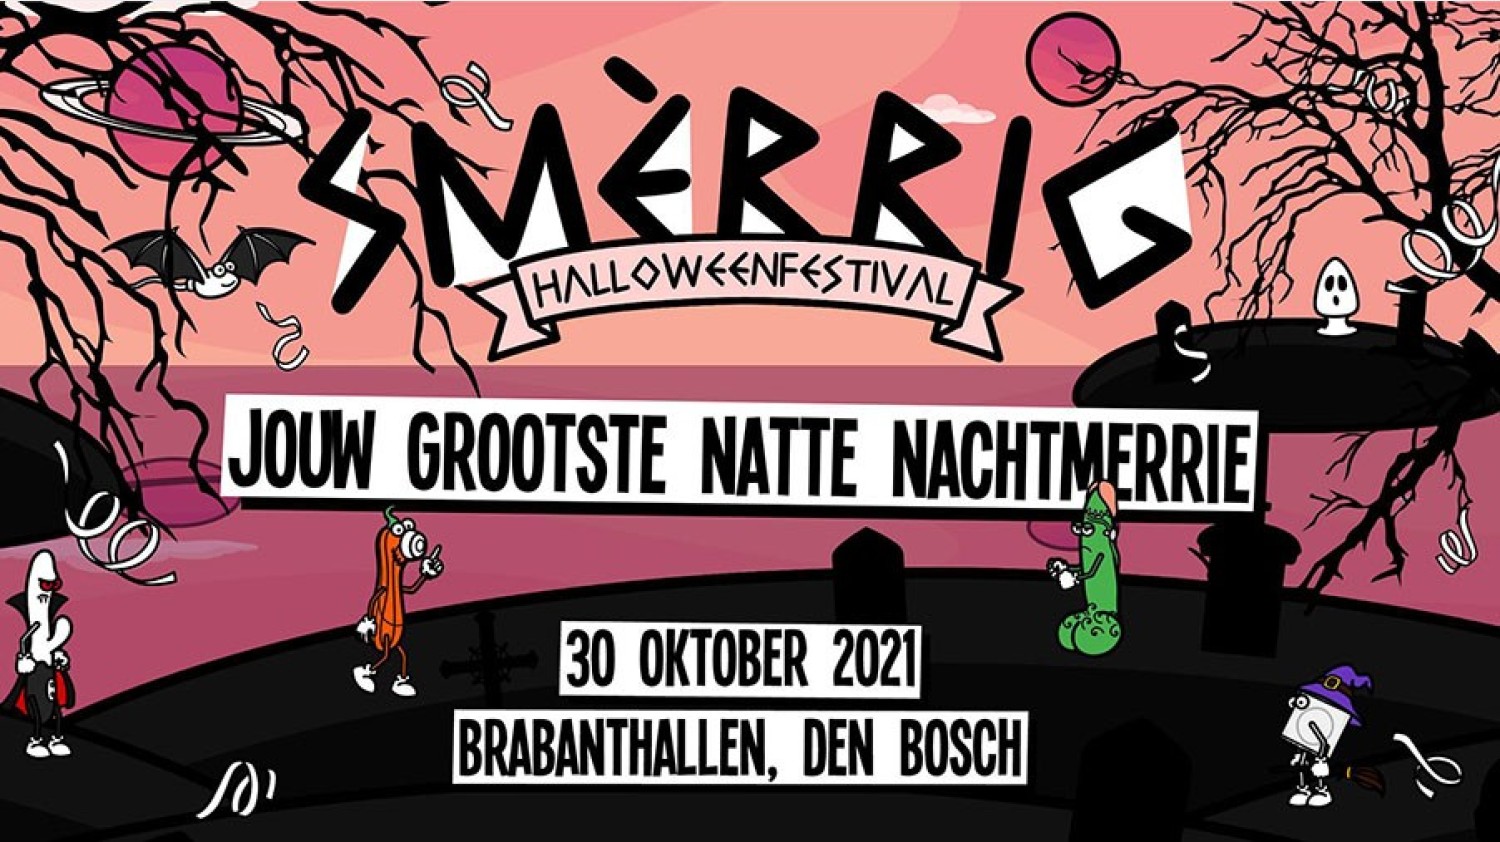 Party nieuws: Pre-registratie gestart voor SMÈRRIG Halloween Festival 2021